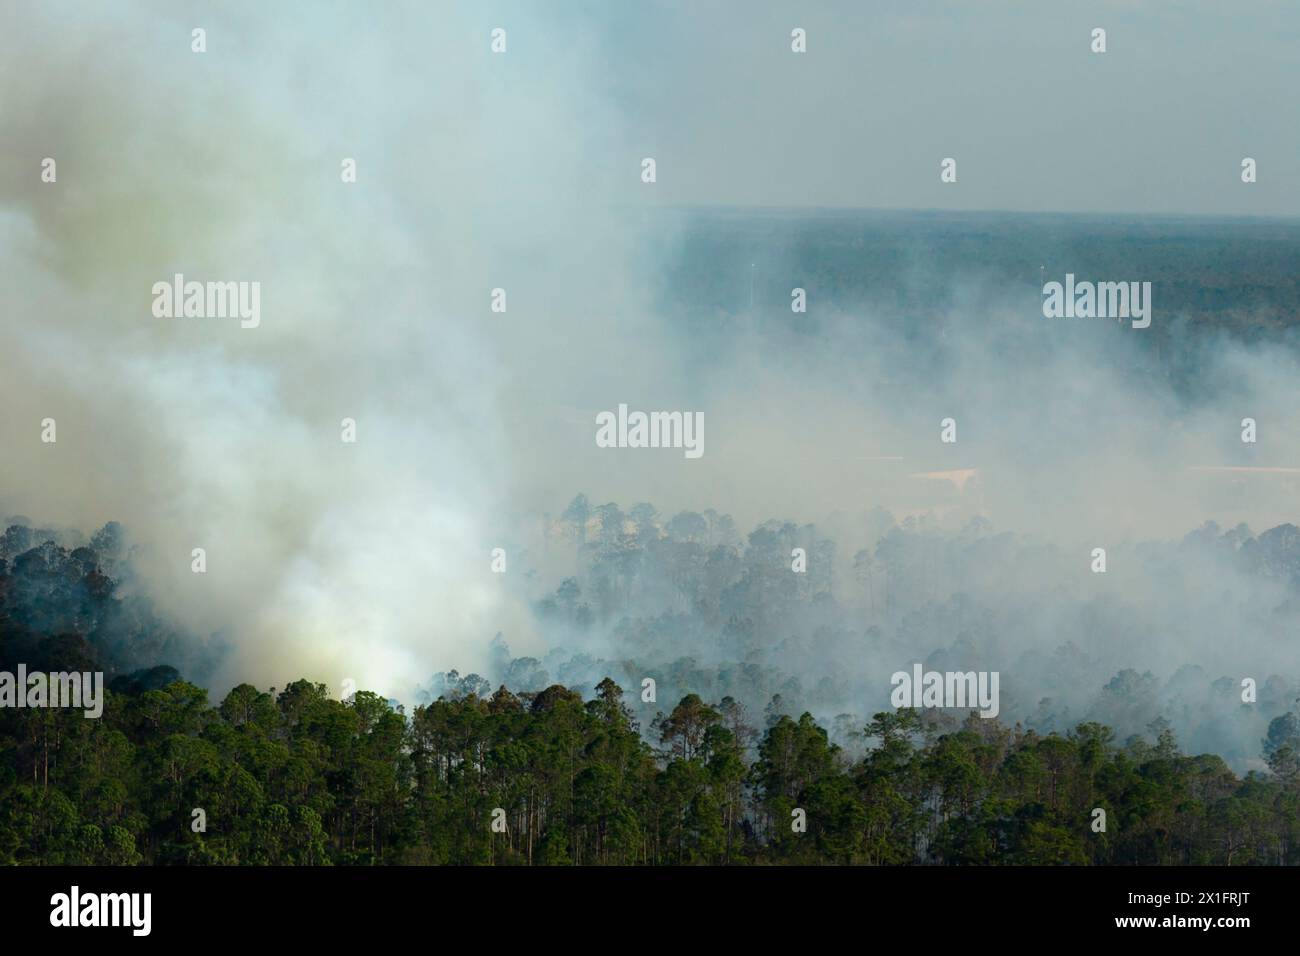 Vue aérienne d'un grand feu de forêt brûlant sévèrement dans les bois de la jungle de Floride. Flammes chaudes avec fumée dense dans la forêt tropicale Banque D'Images